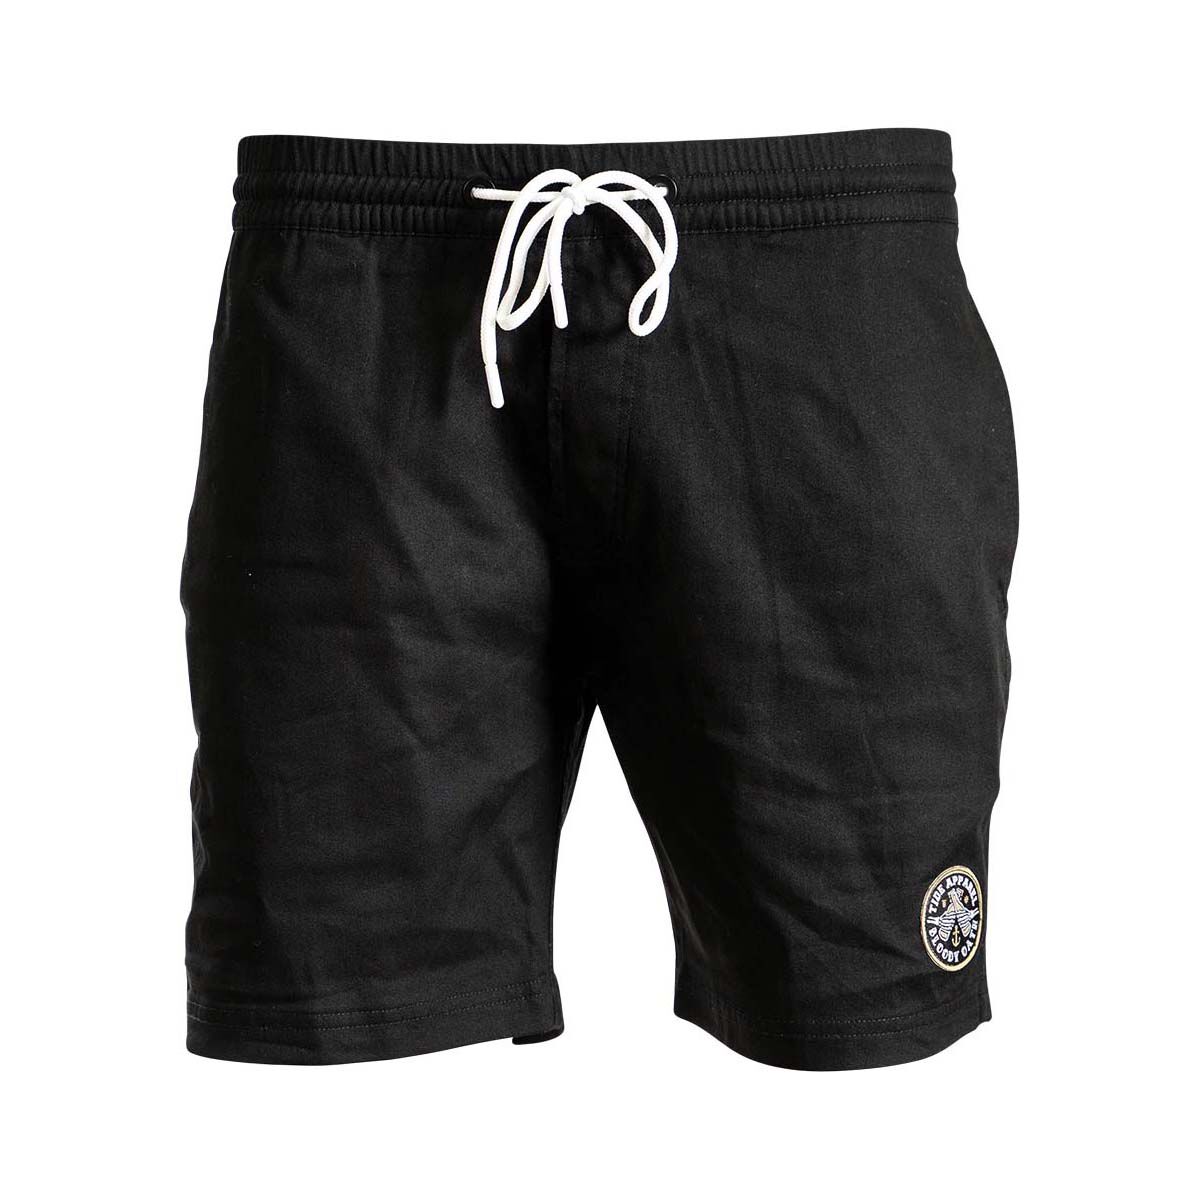 Reel Sportswear Tidal Shorts+ Black / 36